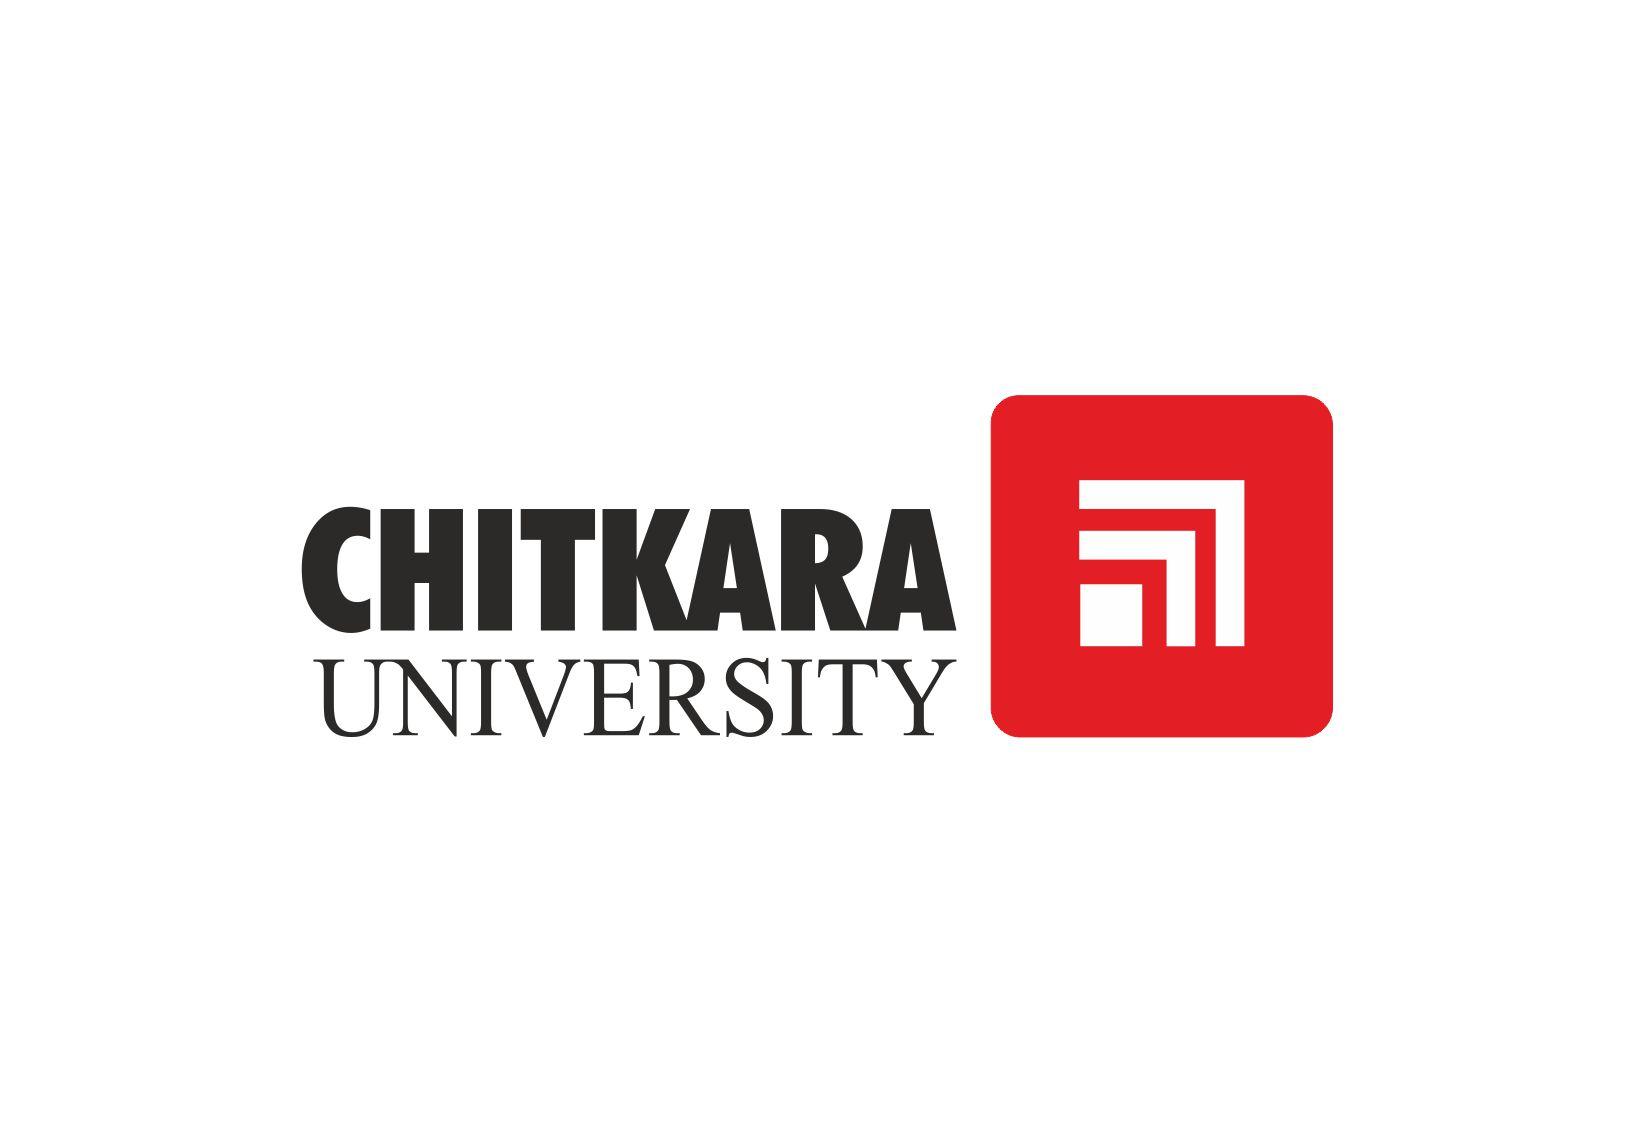 Chitkara University Sweatshirts – My Campus Store